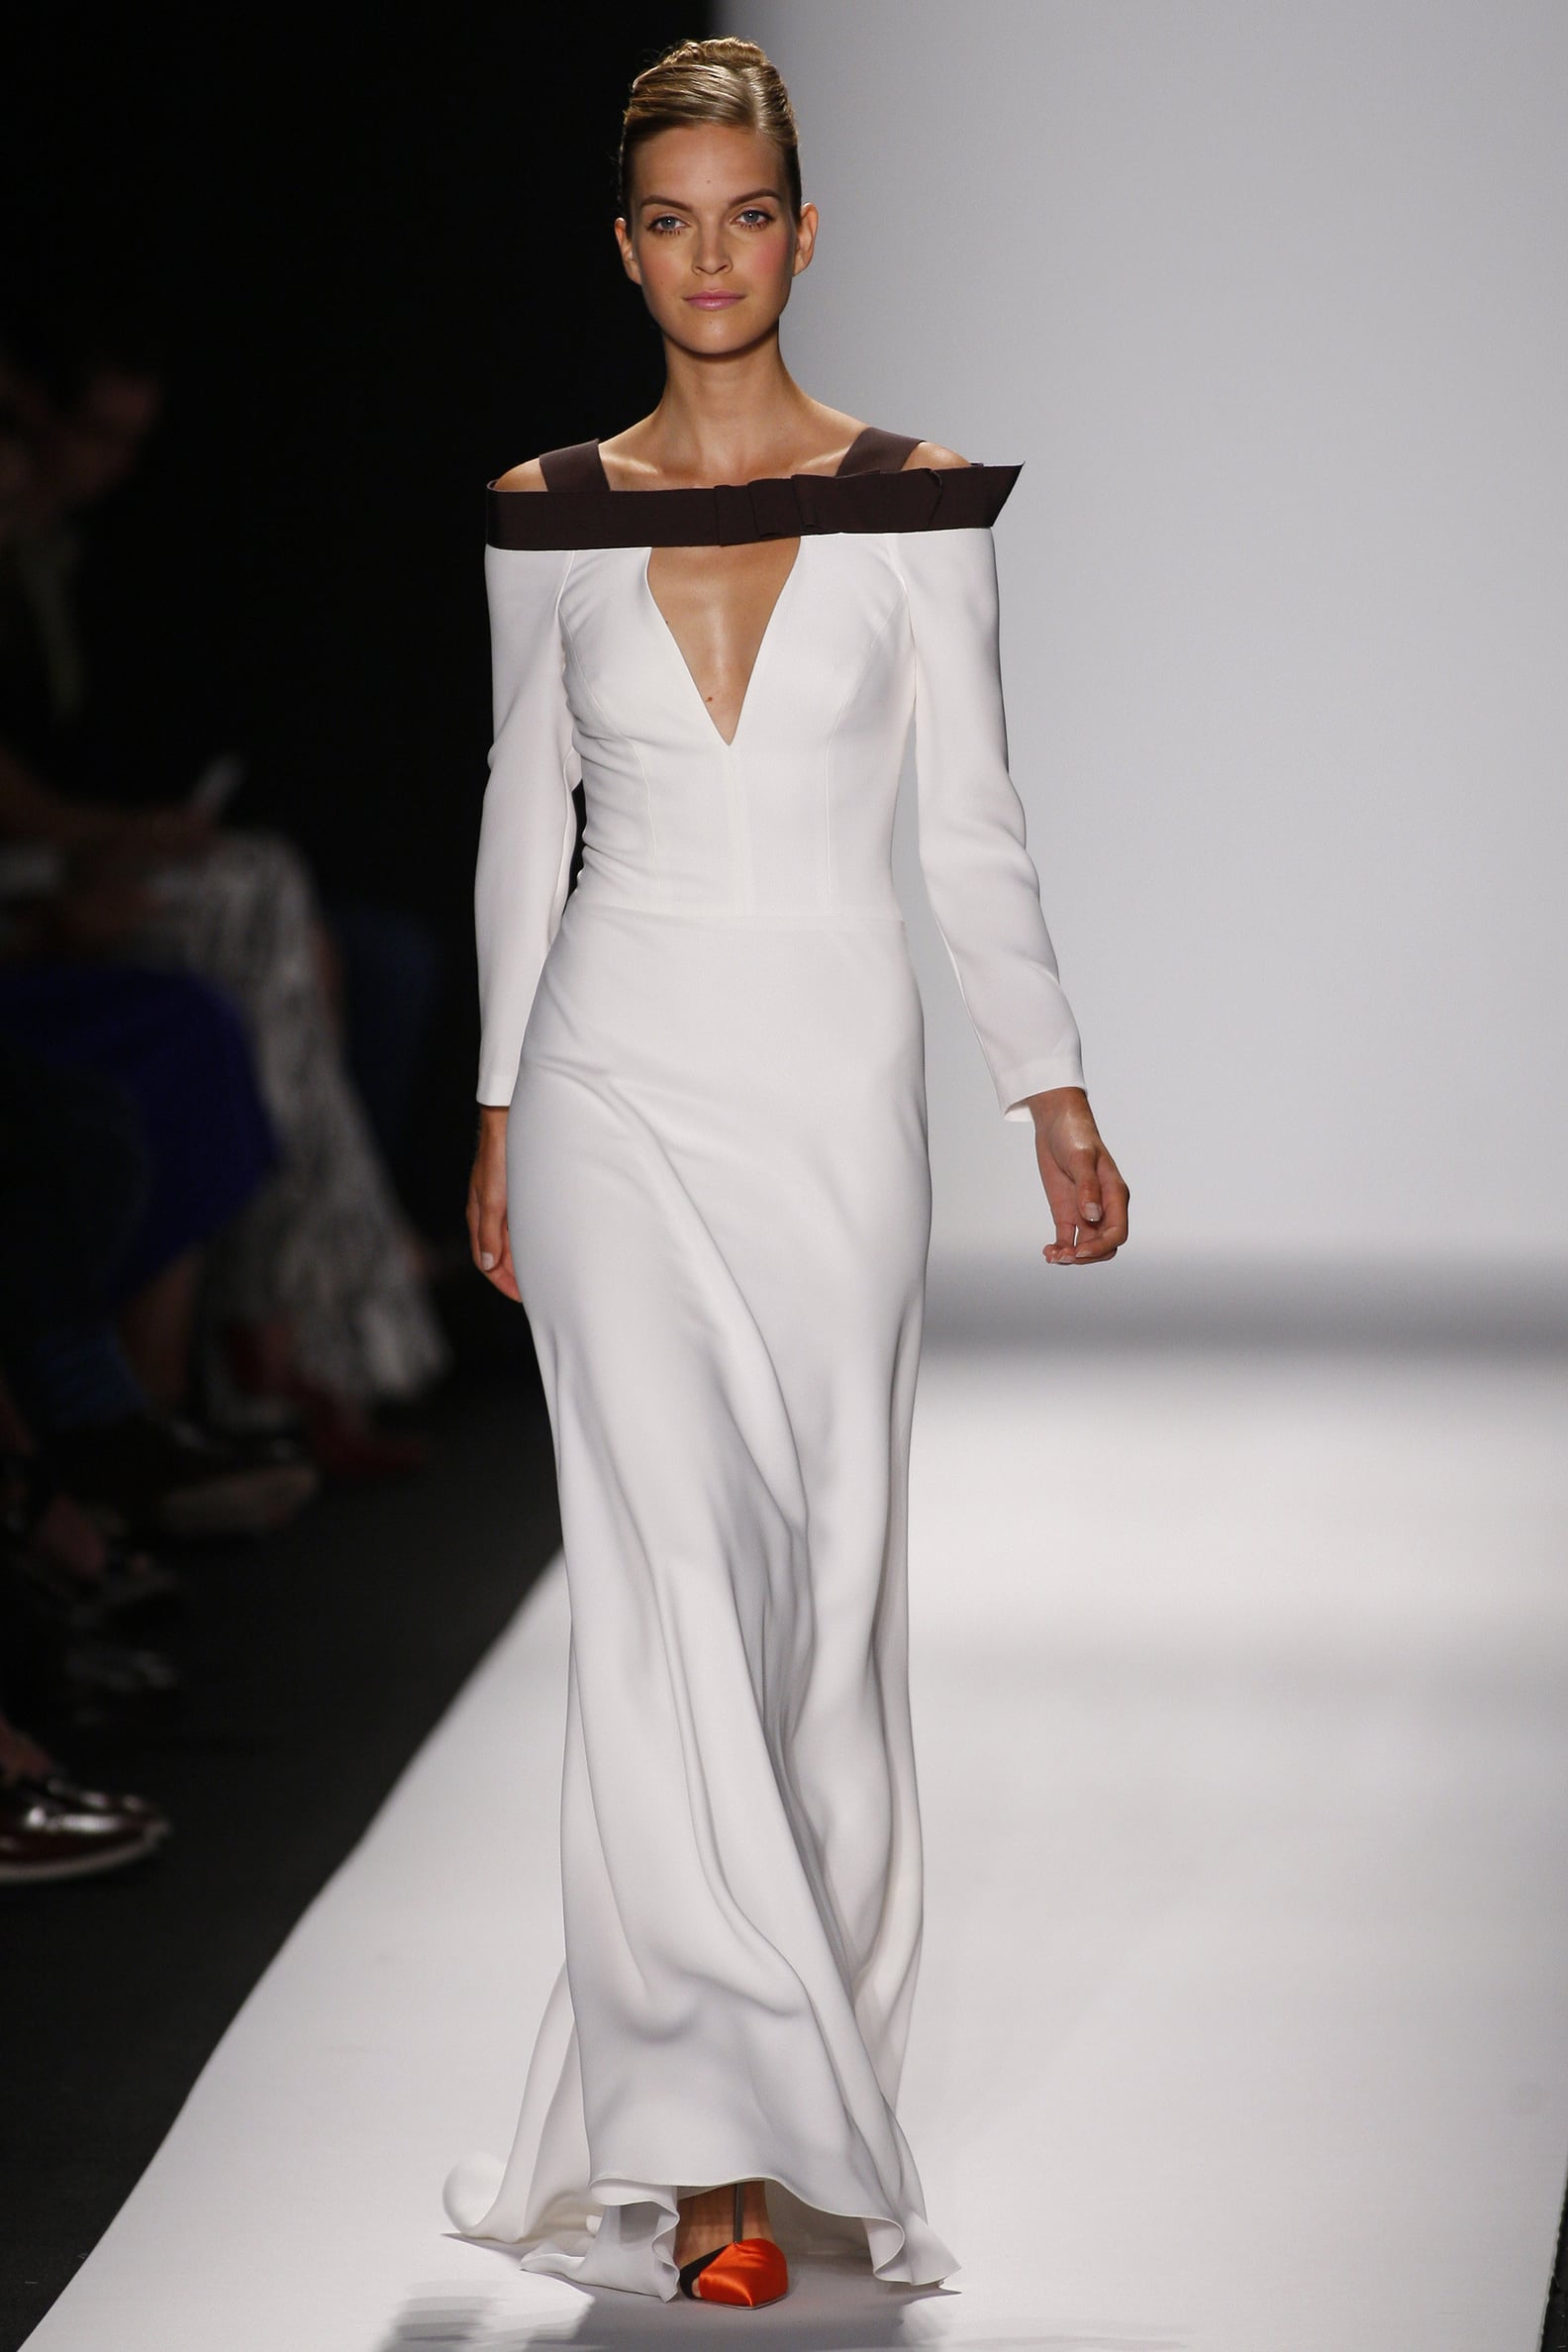 Carolina Herrera Runway Shows | Pictures | POPSUGAR Fashion